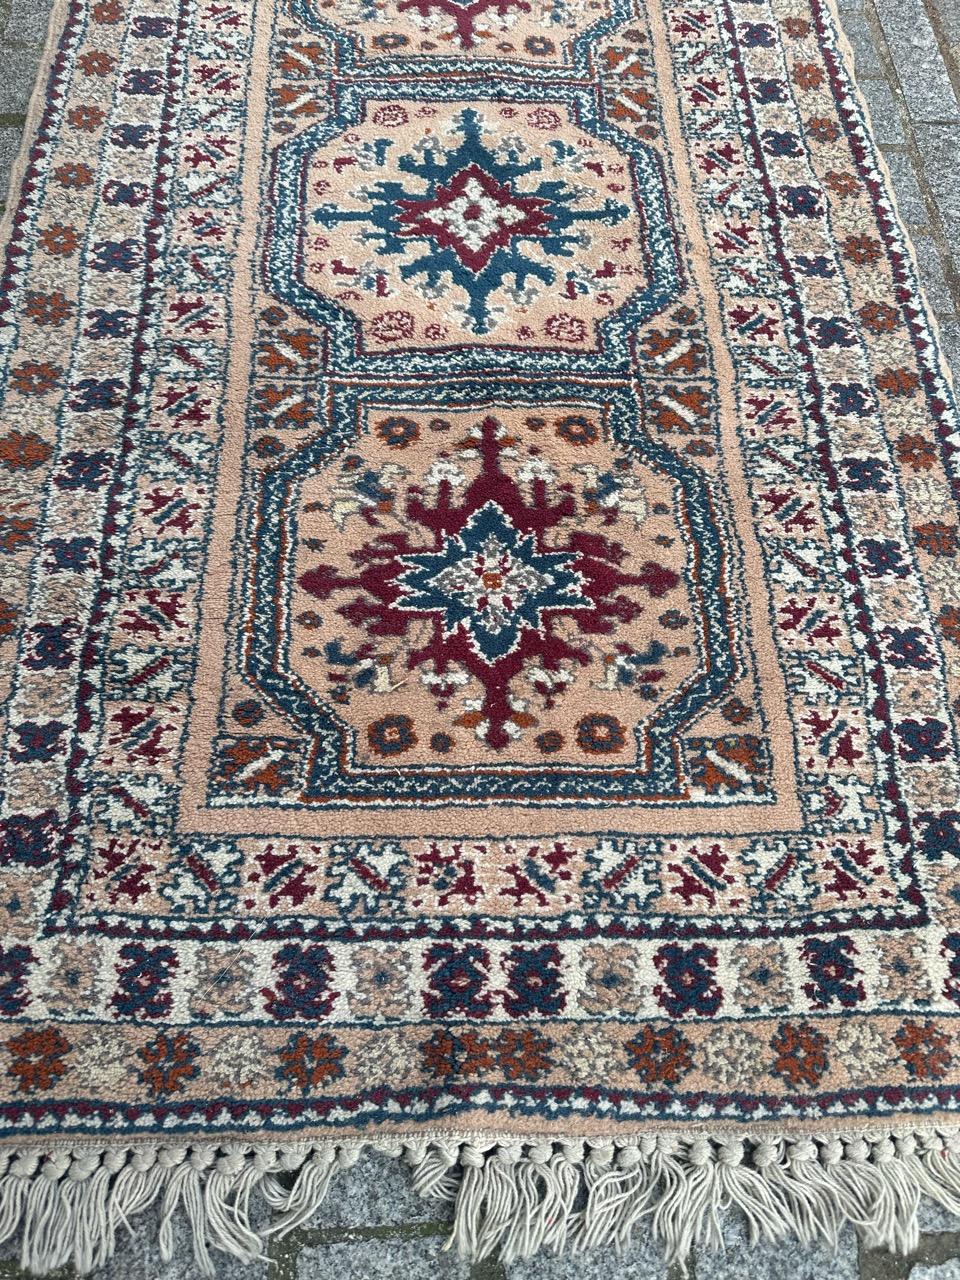 Joli tapis marocain du milieu du siècle avec de beaux motifs géométriques et tribaux et de belles couleurs avec du rose, du violet, du bleu, du gris, de l'orange et du blanc, entièrement noué à la main avec de la laine sur une base de laine.